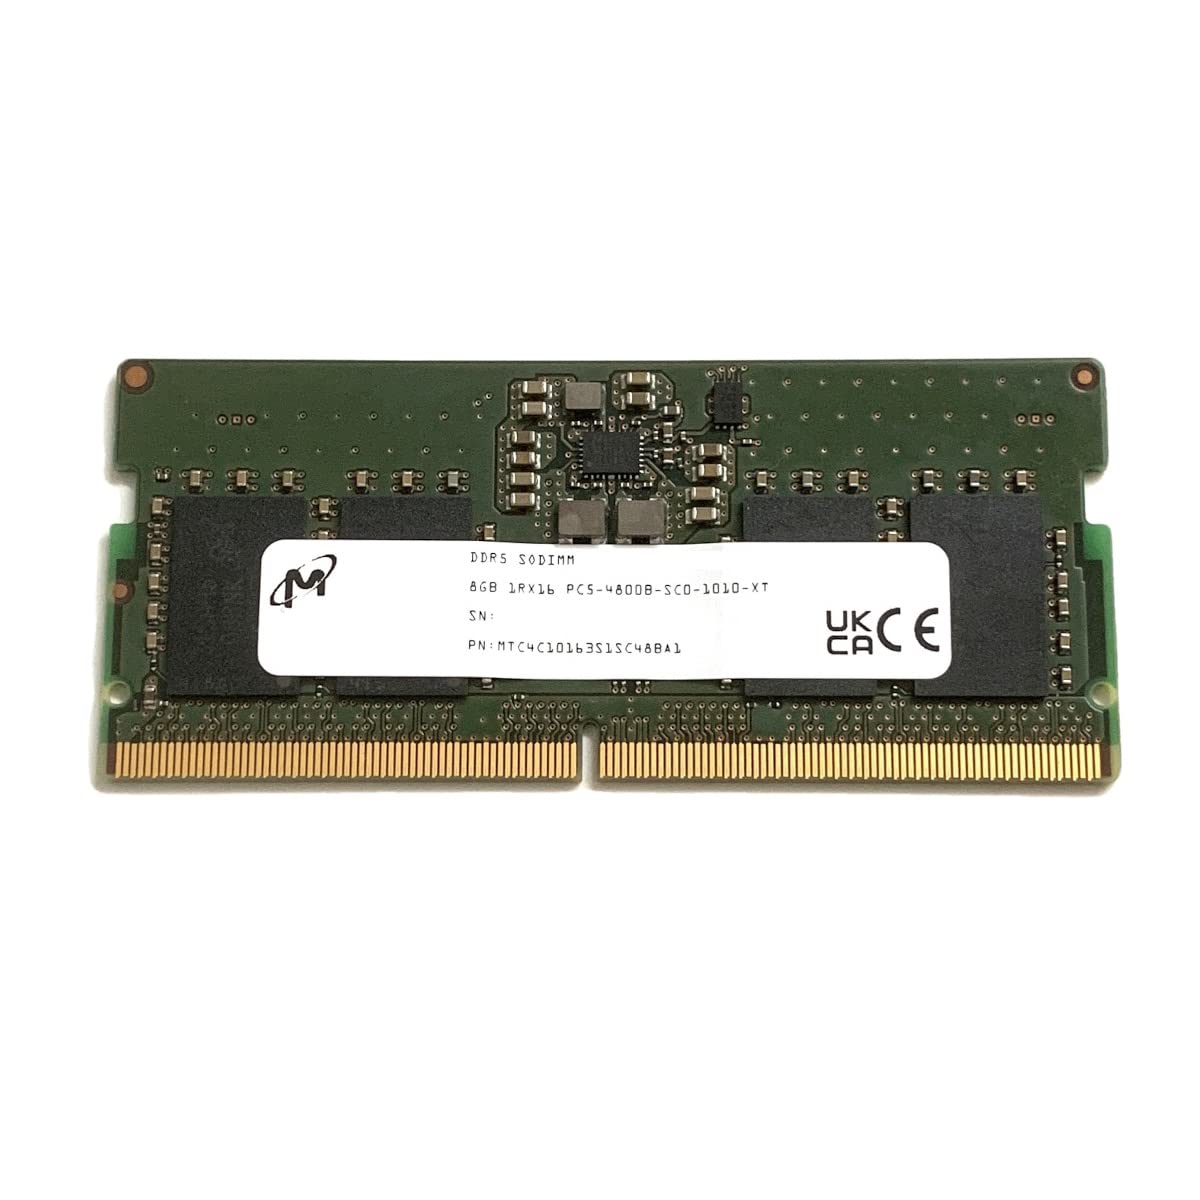 Micron SODIMM 8GB PC5 DDR5 4800 1Rx16 MTC4C10163S1SC48BA1 ノートパソコン RAM メモリ Dell HP Lenovo その他のシ